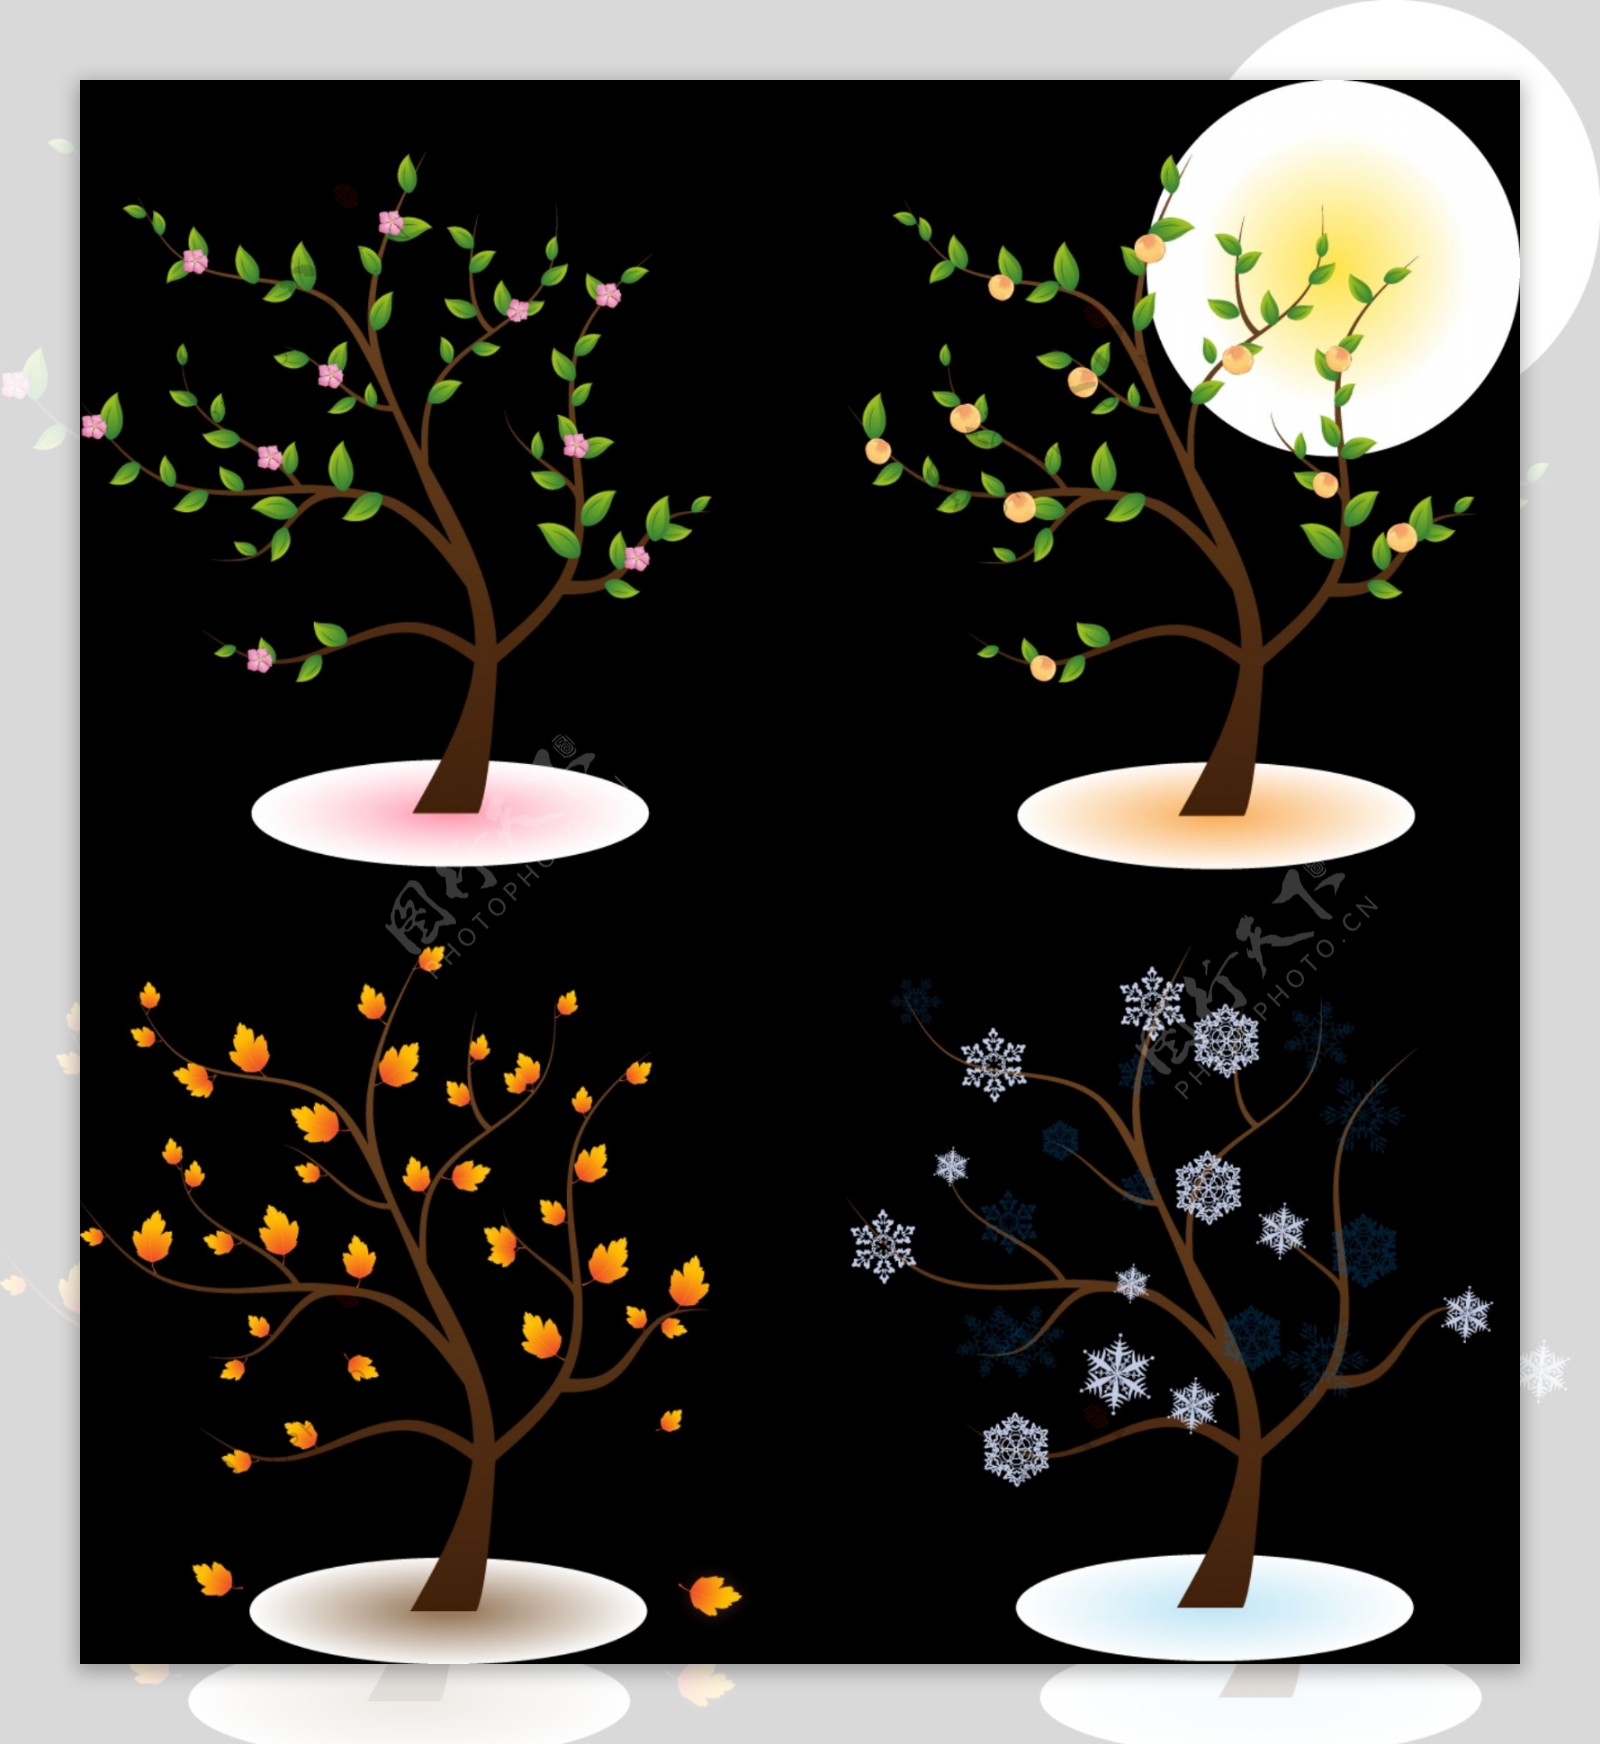 四种季节树木矢量图AI